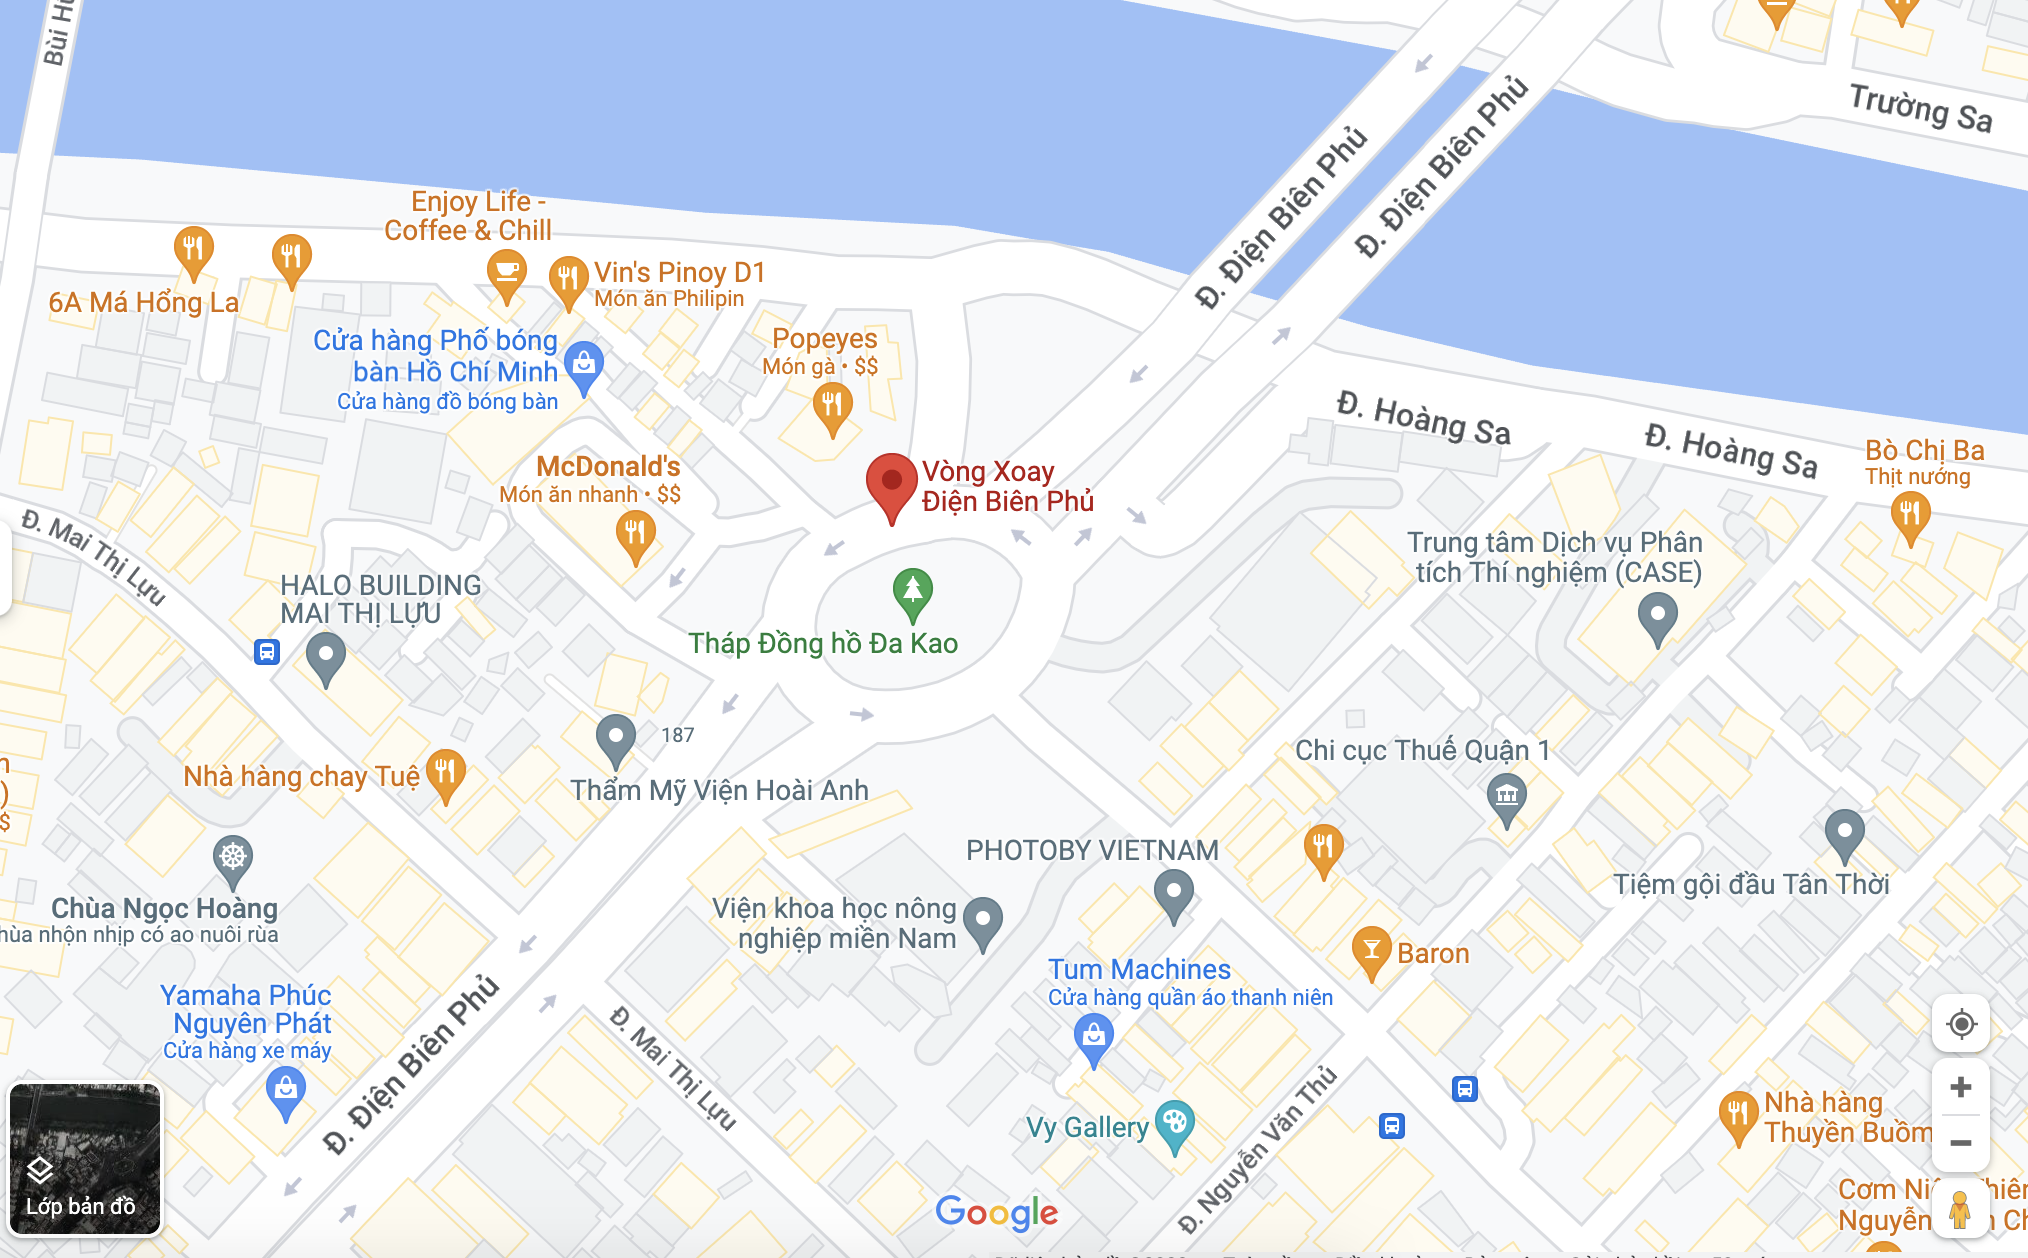 Vị trí vòng xoay Điện Biên Phủ. Ảnh cắt từ Googel Maps